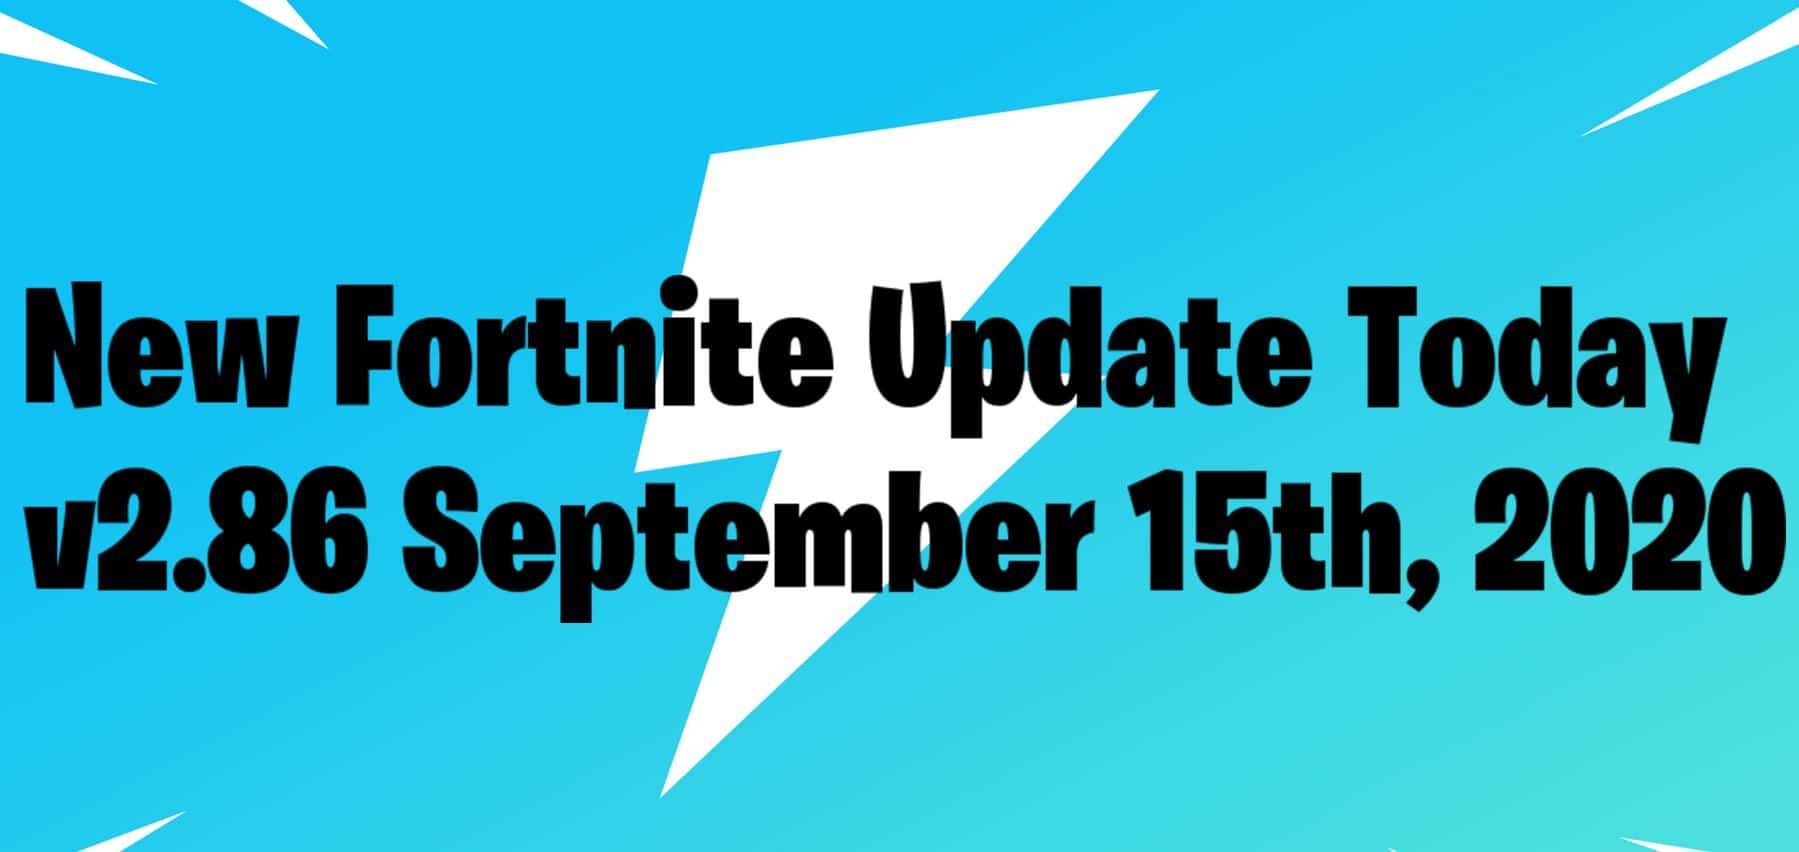 September 15th New Fortnite Update